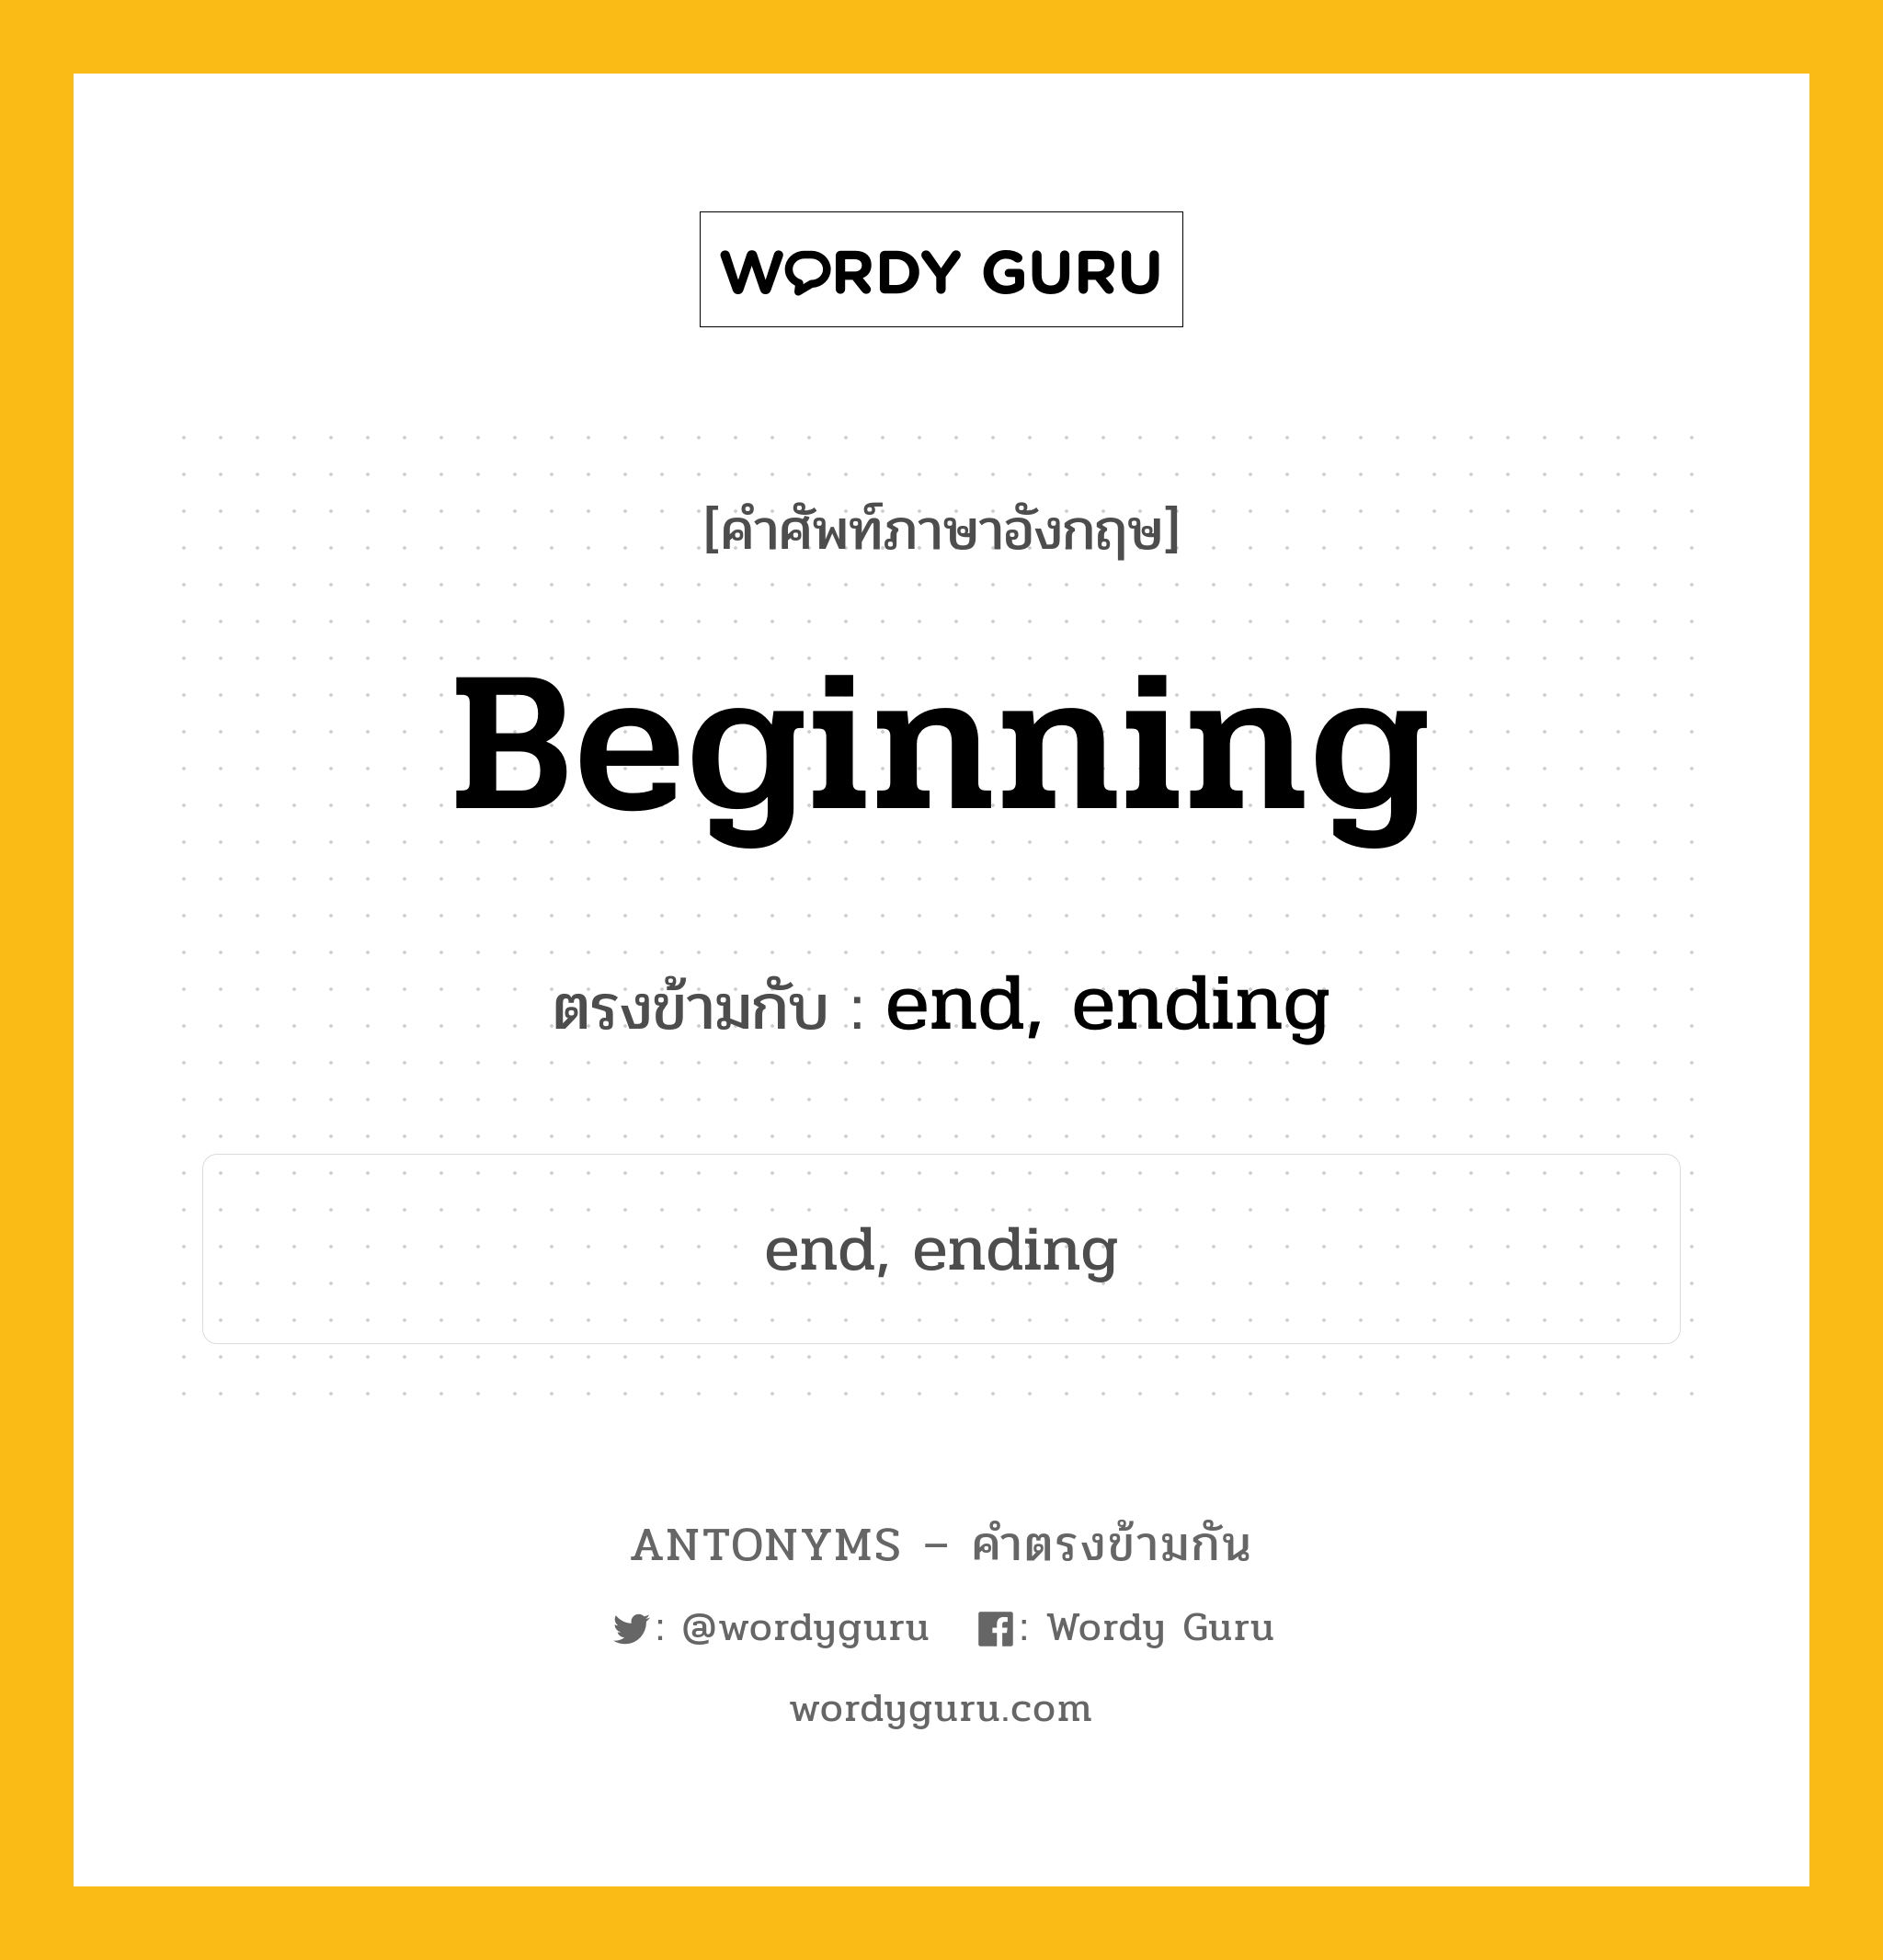 beginning เป็นคำตรงข้ามกับคำไหนบ้าง?, คำศัพท์ภาษาอังกฤษ beginning ตรงข้ามกับ end, ending หมวด end, ending